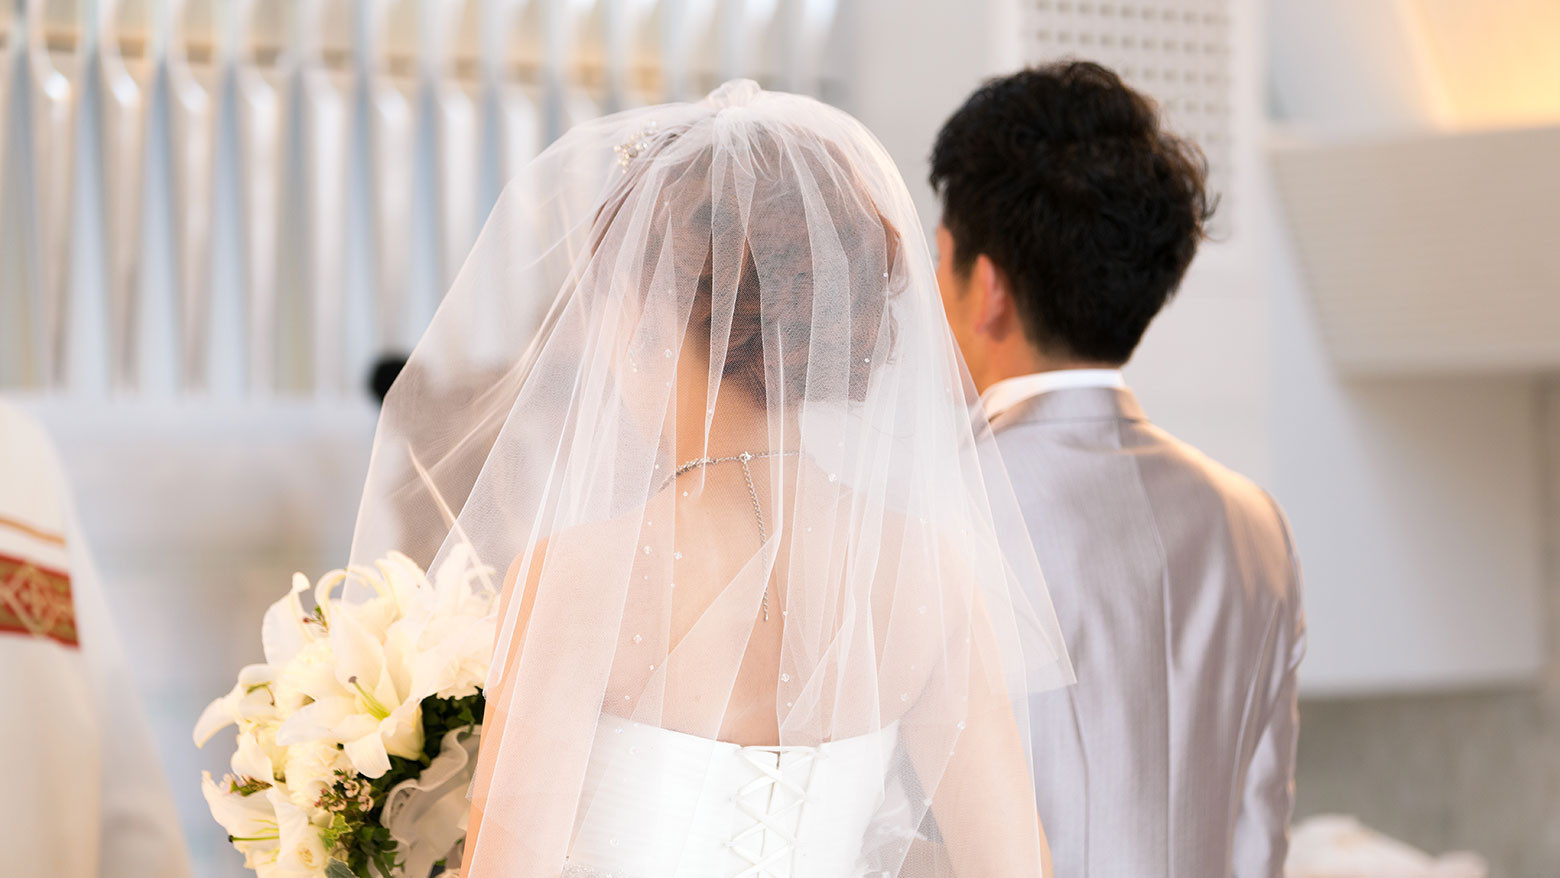 Đổi họ sau kết hôn ở Nhật Bản: Kêu gọi thay đổi